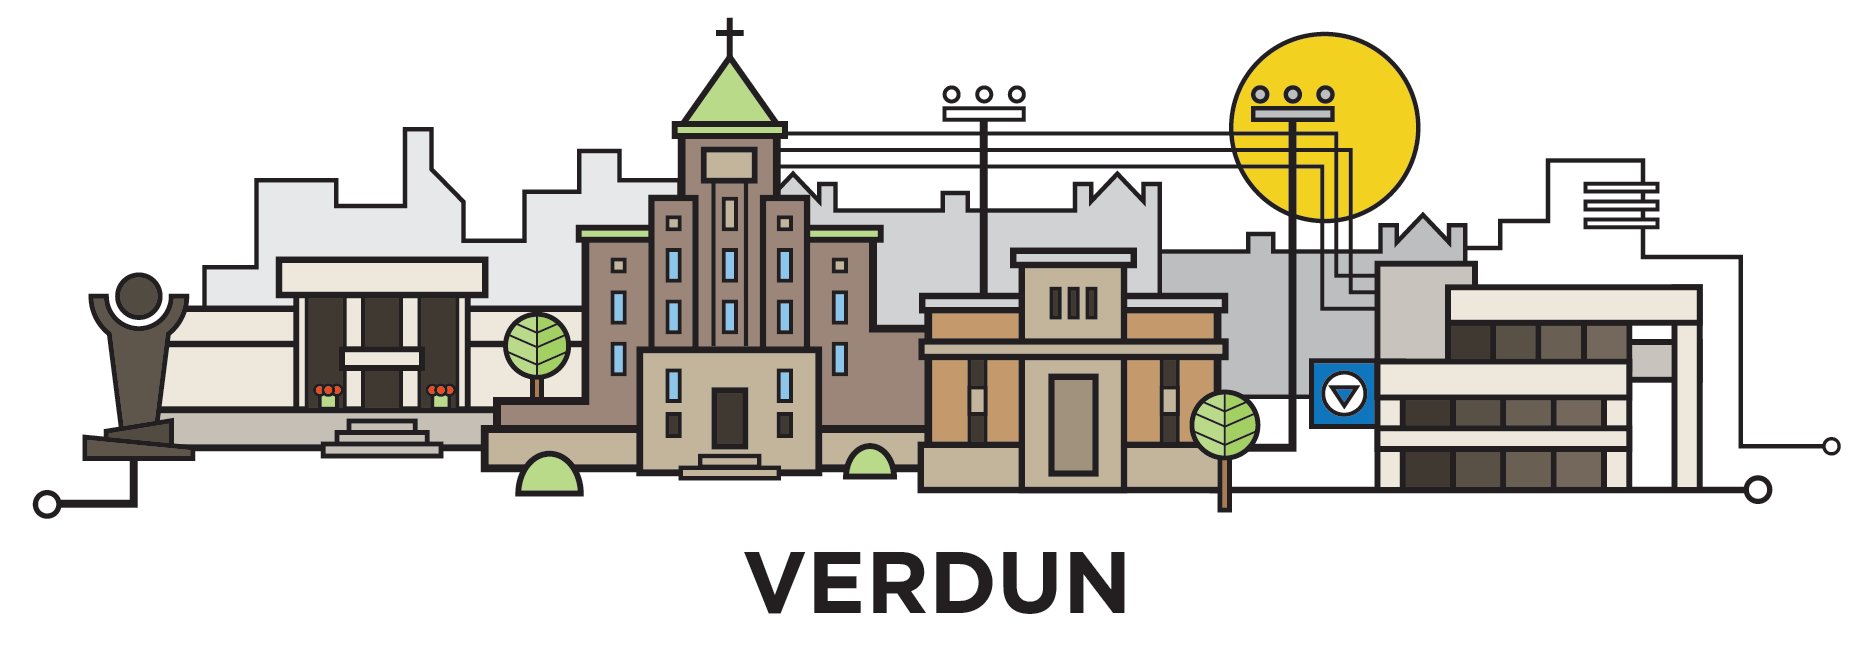 mtl-verdun-cityline-illustration-by-loogart